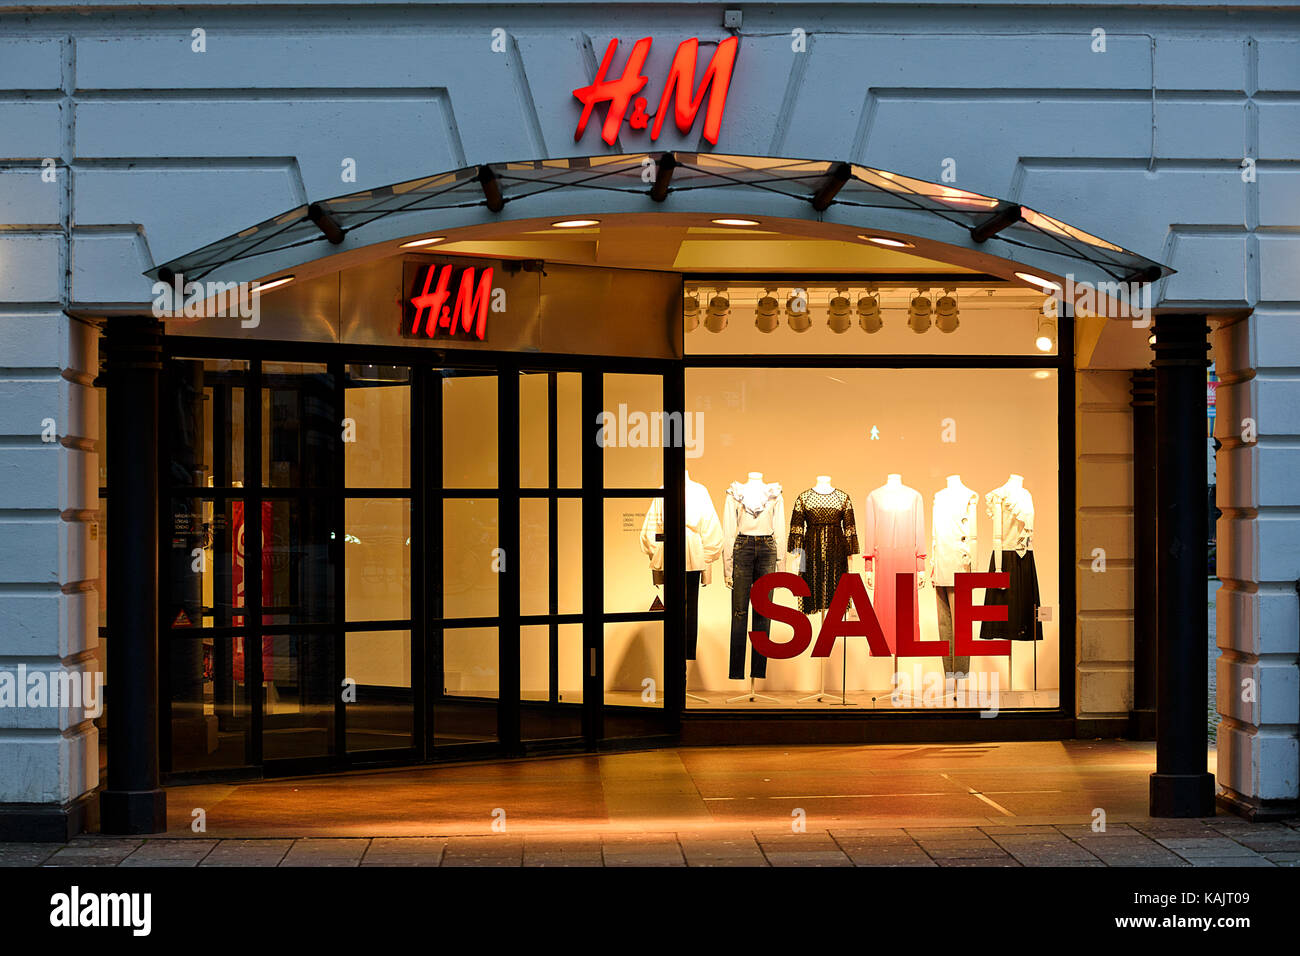 Malmö, Schweden - 25. Juli 2017: Außenansicht des H&M Store in Malmö,  Schweden. HM ist in einem bekannten schwedischen multinationalen  Einzelhandels - Kleidung Firma Stockfotografie - Alamy